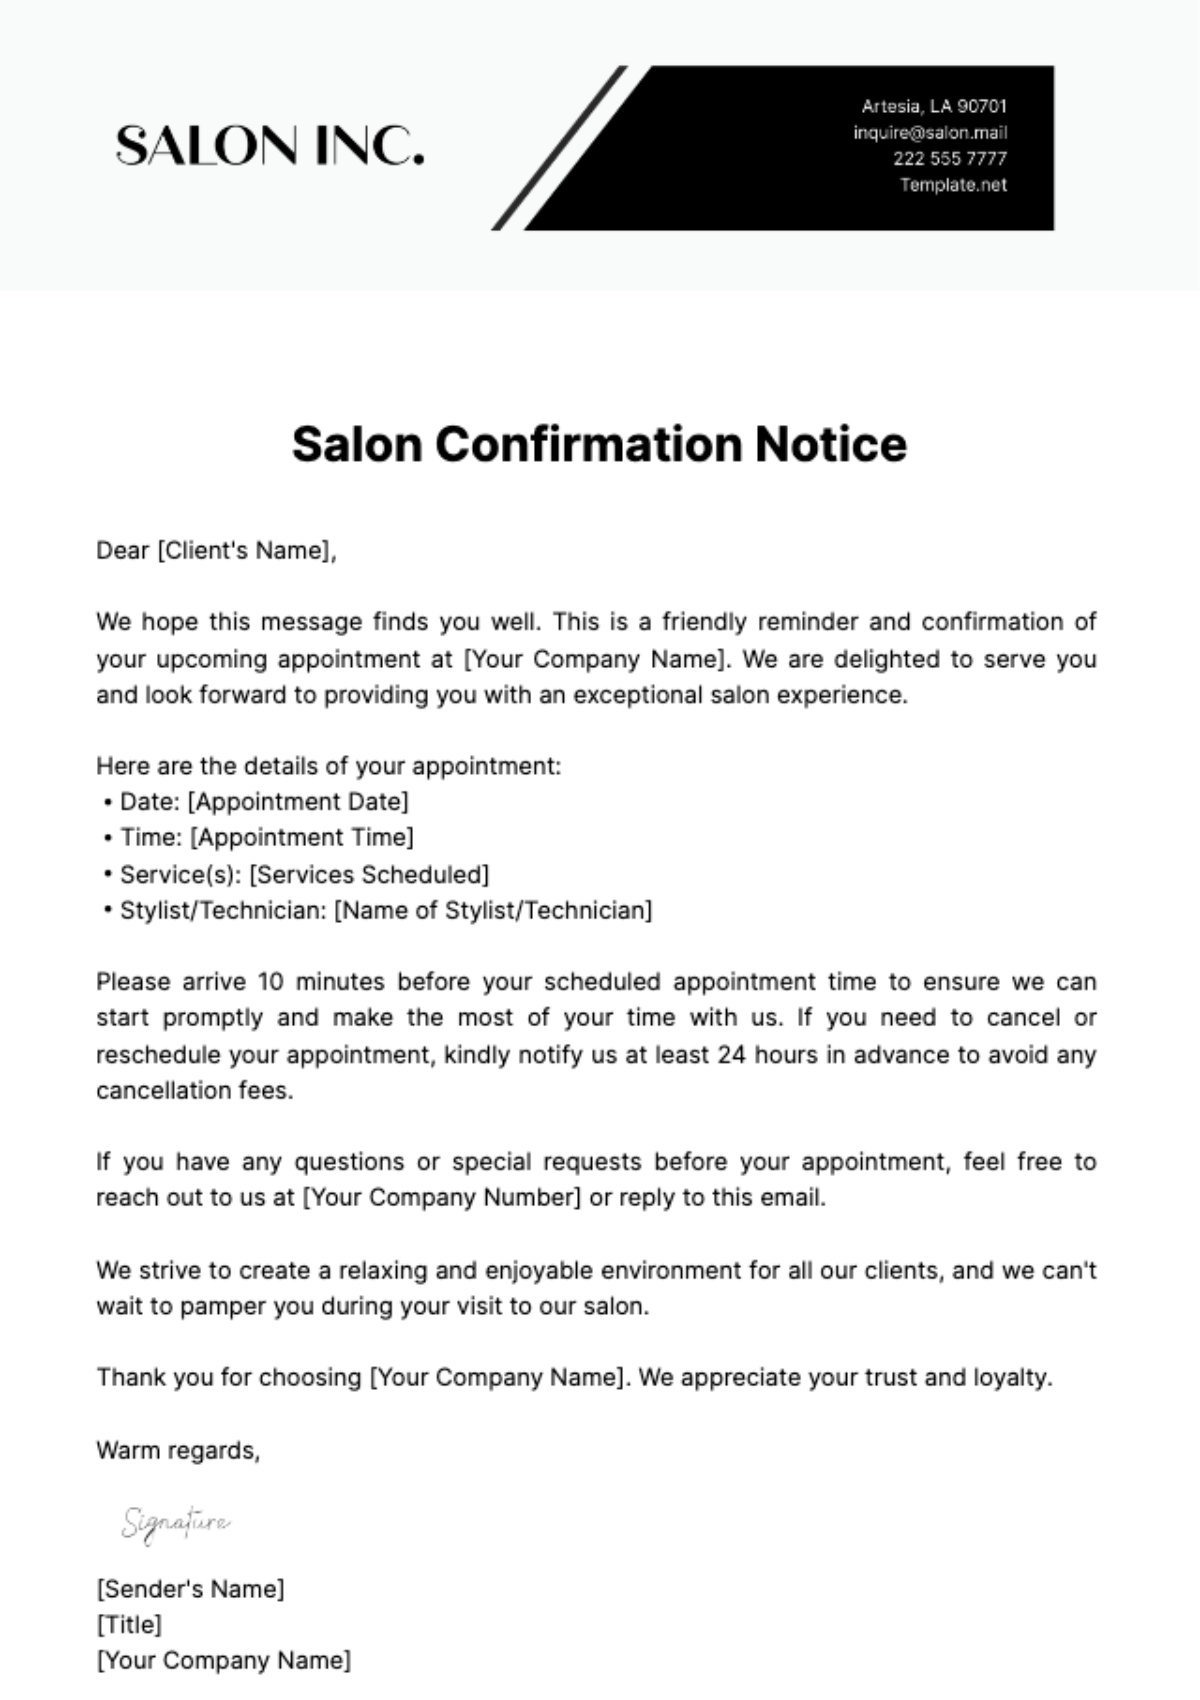 Salon Confirmation Notice Template